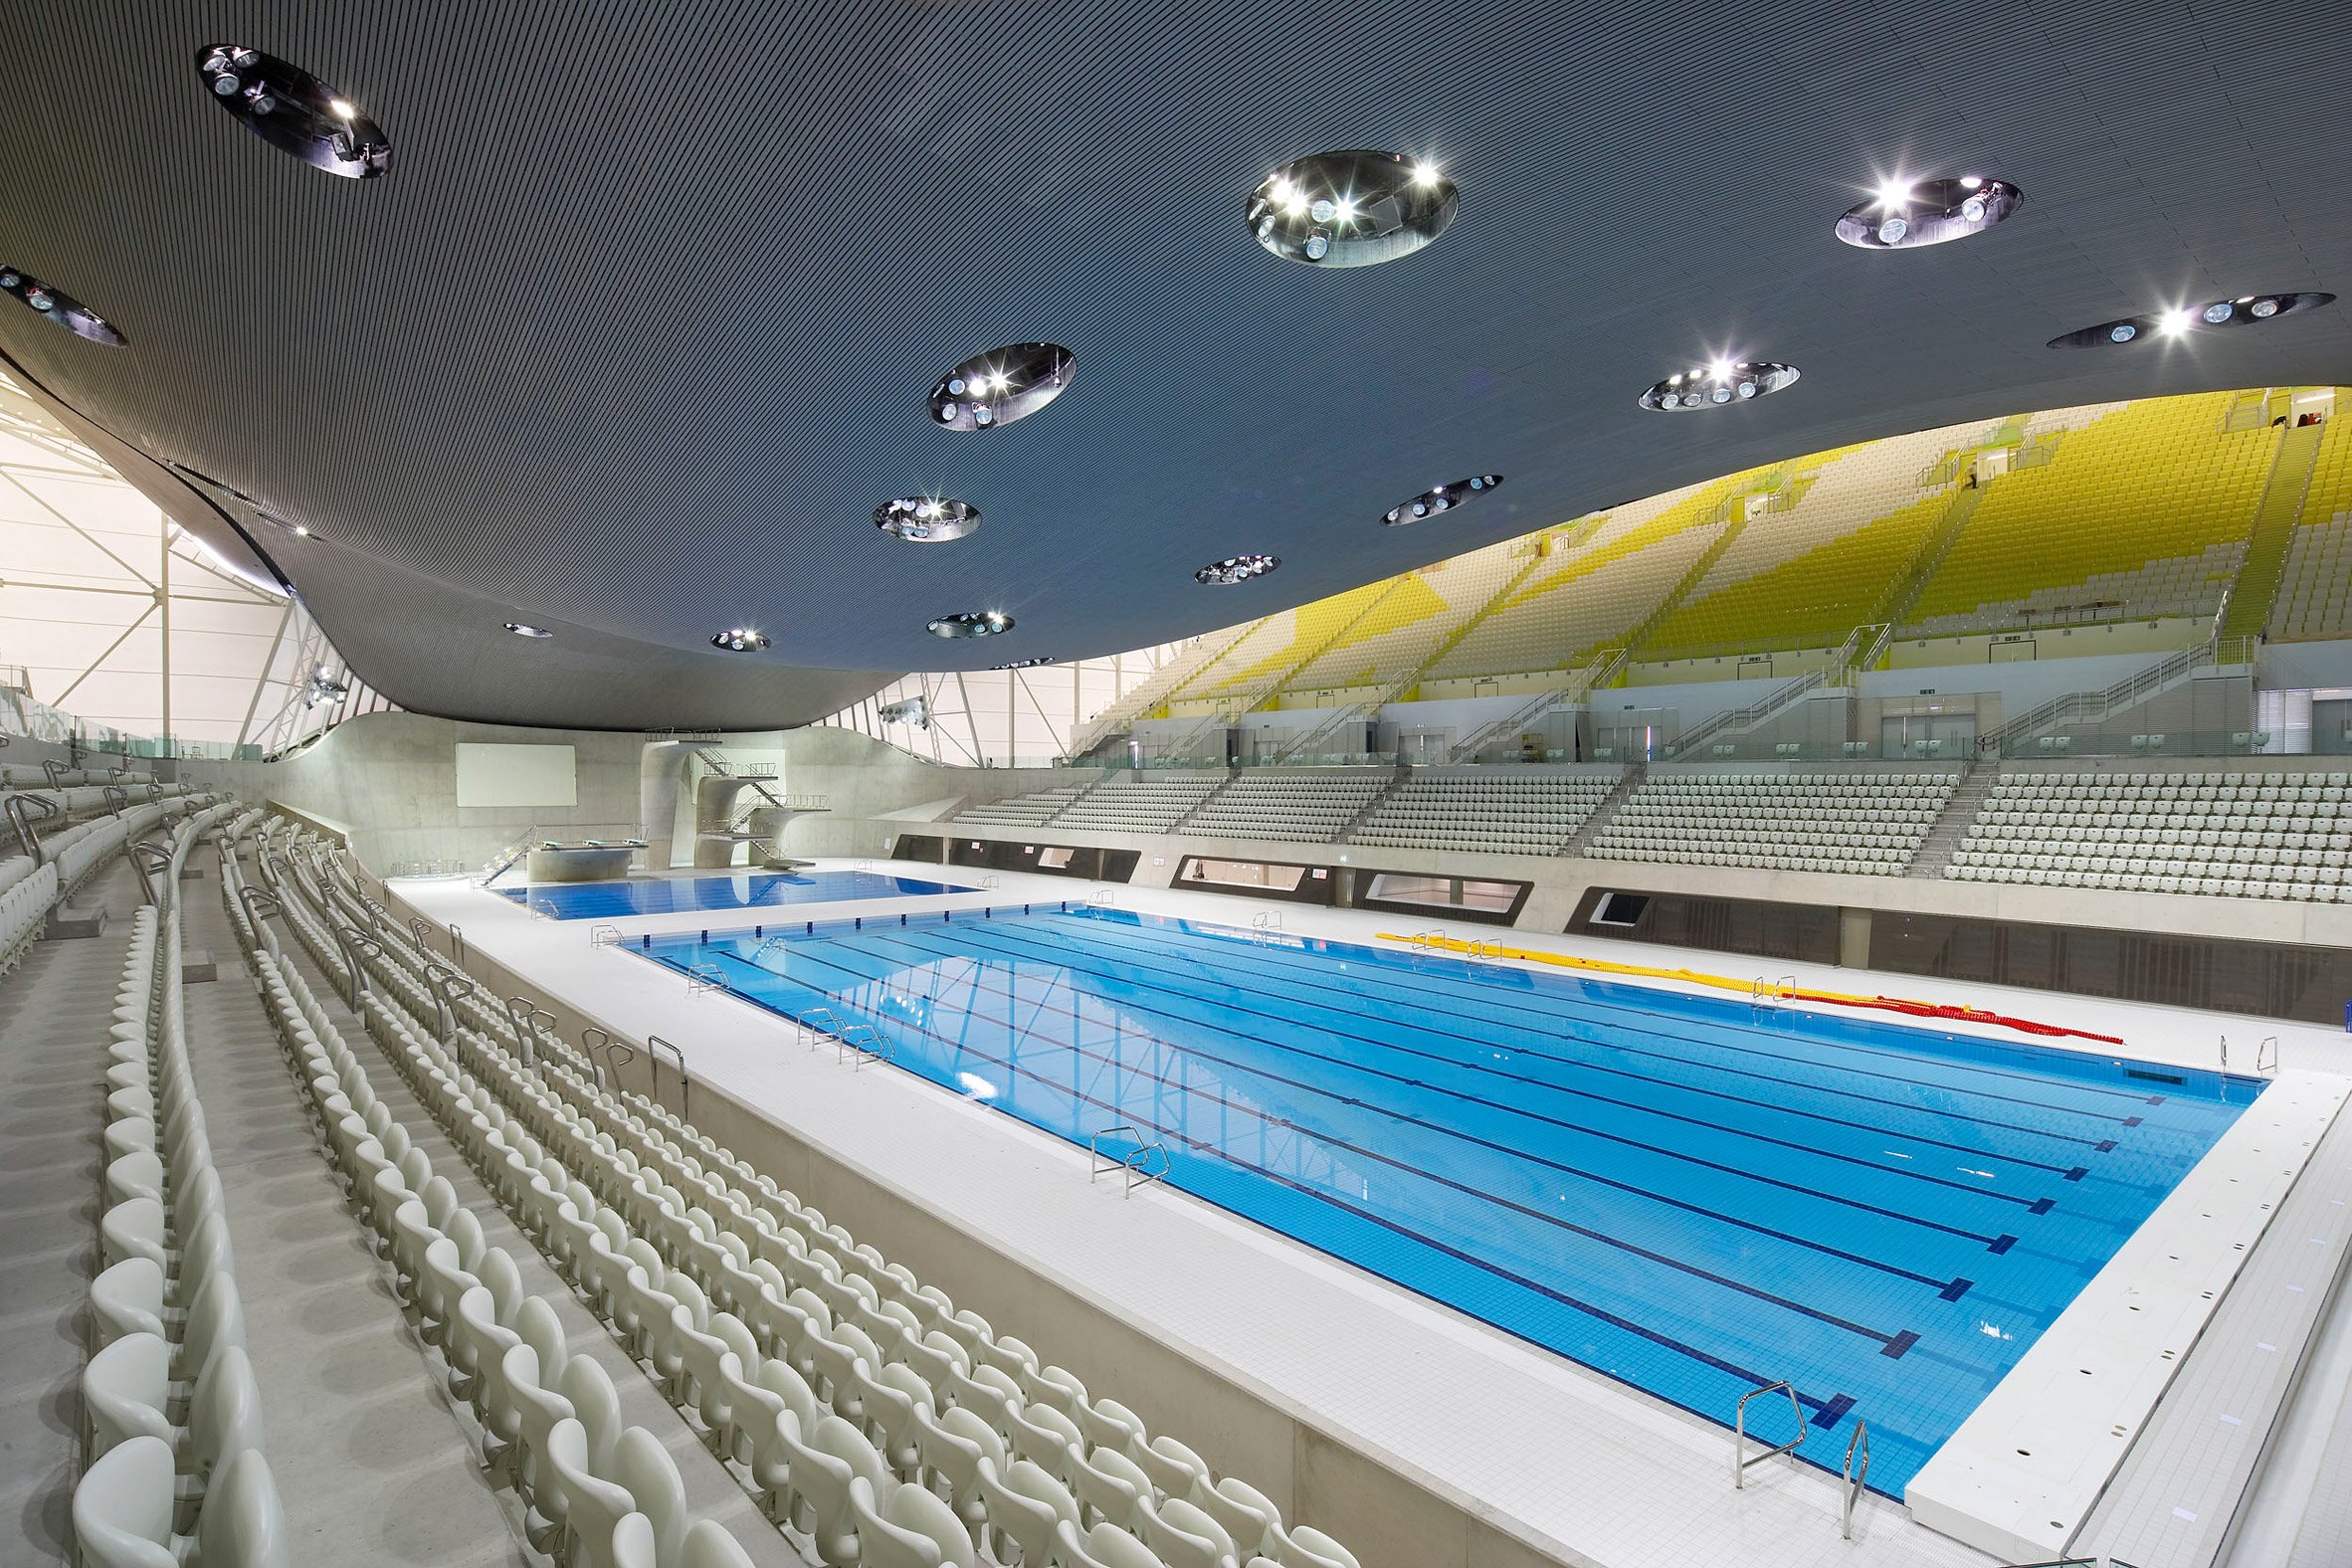 London Aquatics Centre by Zaha Hadid Architects